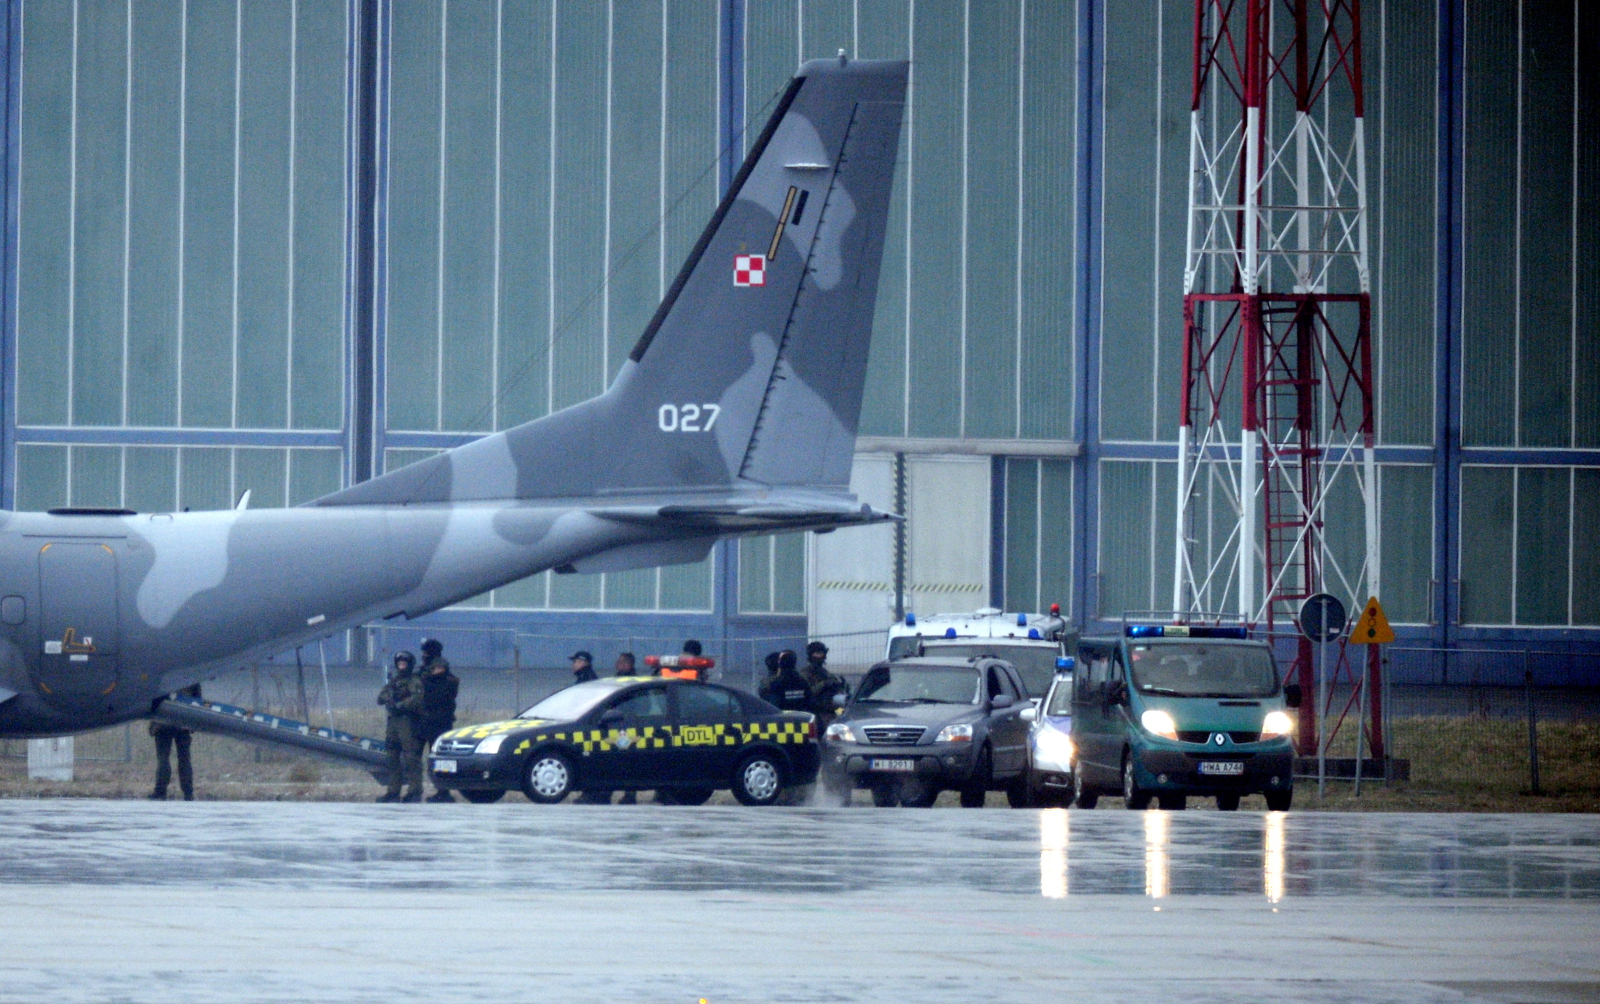 Samolot specjalny CASA, na pokładzie którego konwojowany jest podejrzany o zabójstwo kobiety Kajetan P., wylądował na wojskowym lotnisku Okęcie